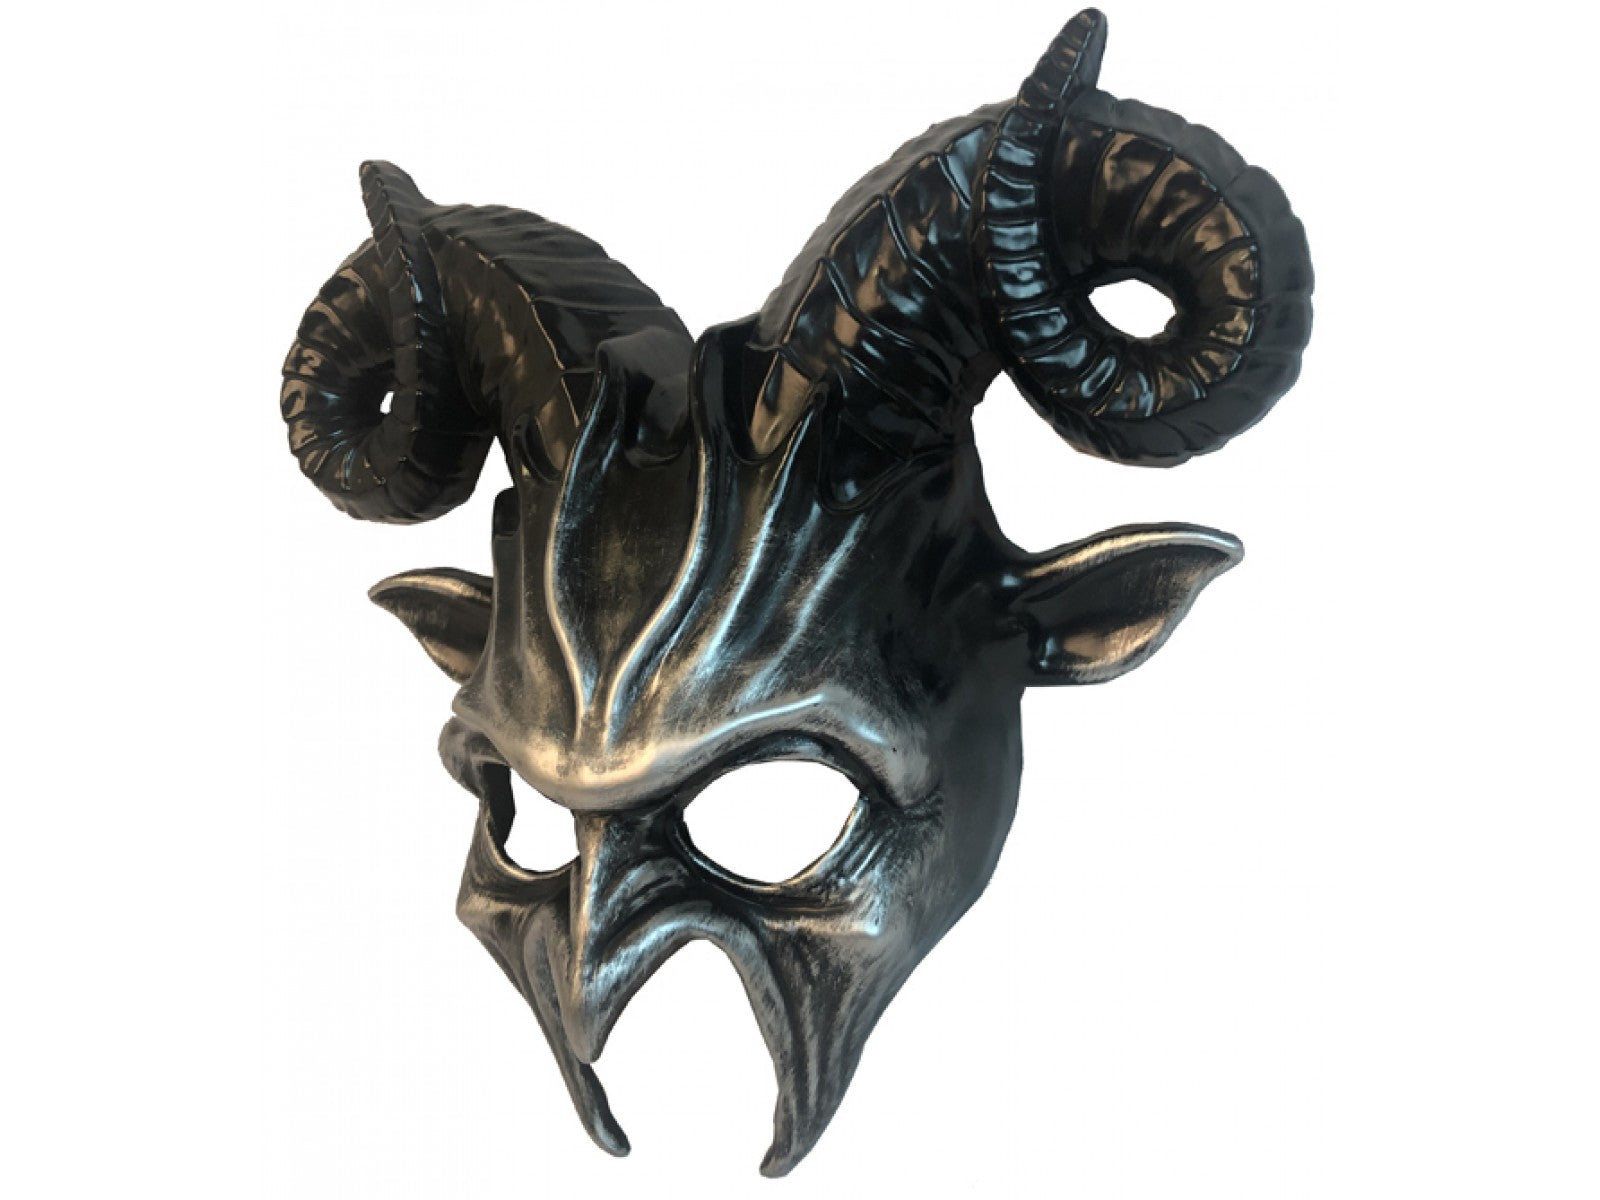 Venetian Style Goat Horn Mask